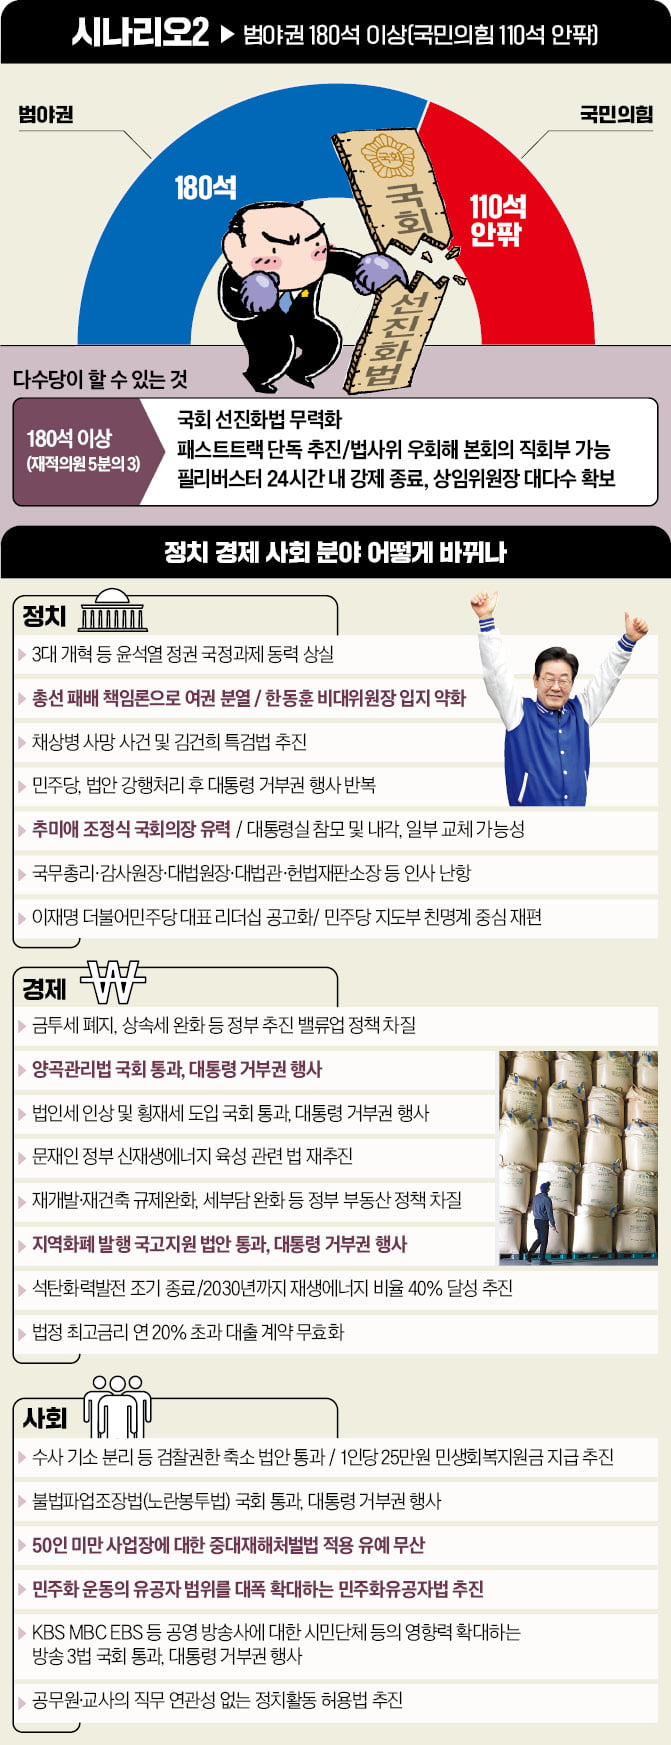 운명의 총선…3대 개혁 완수 VS 경제 민주화 개헌